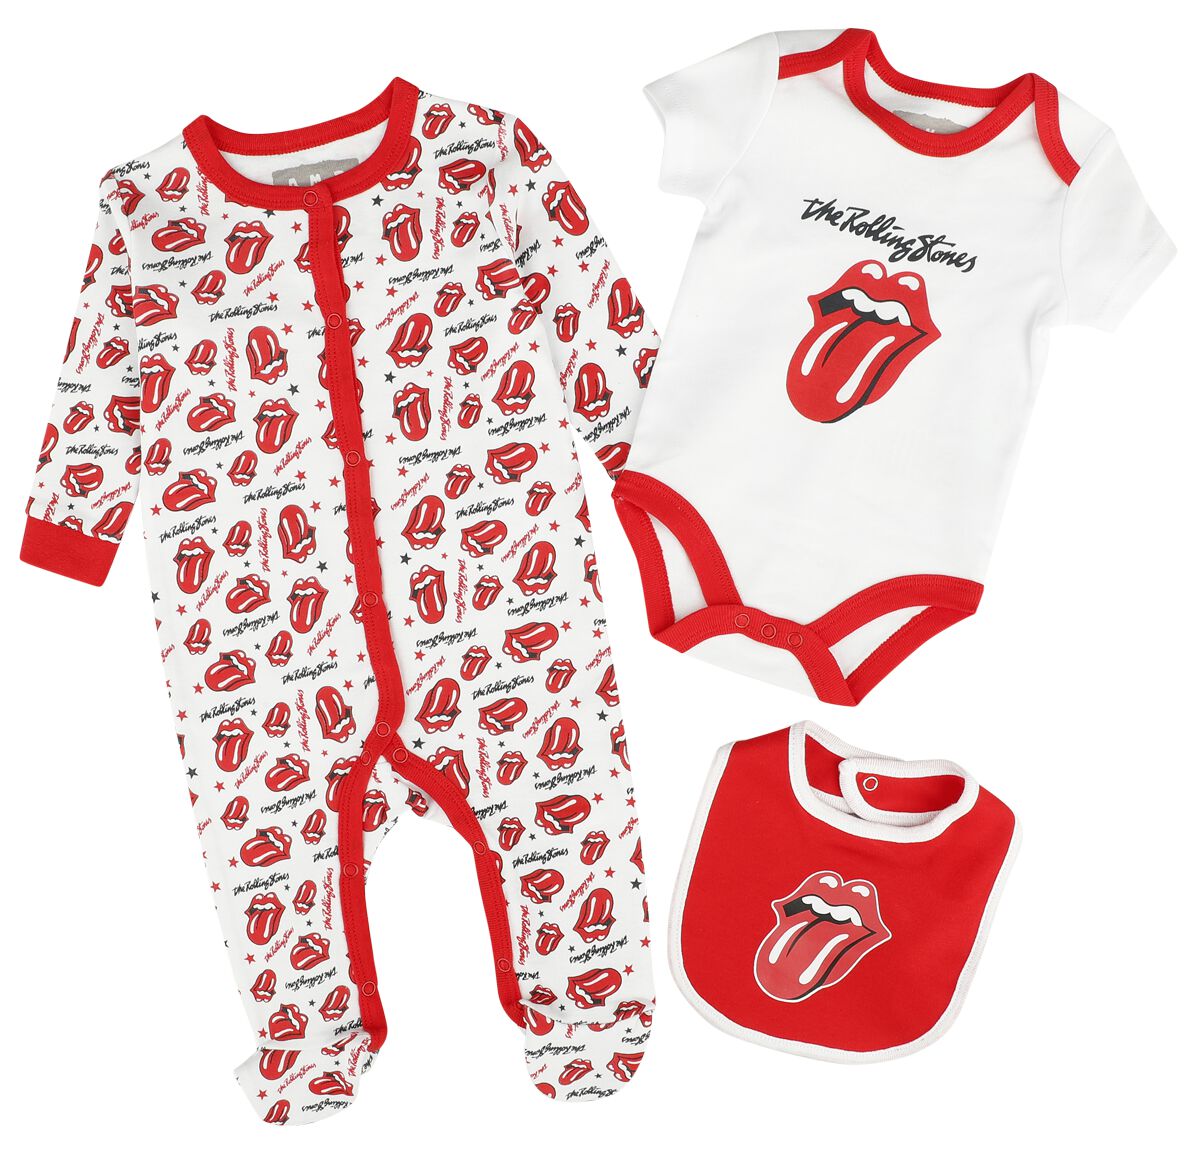 The Rolling Stones Set für Neugeborene - Amplified Collection - Baby Set - für Mädchen & Jungen - multicolor  - Lizenziertes Merchandise!